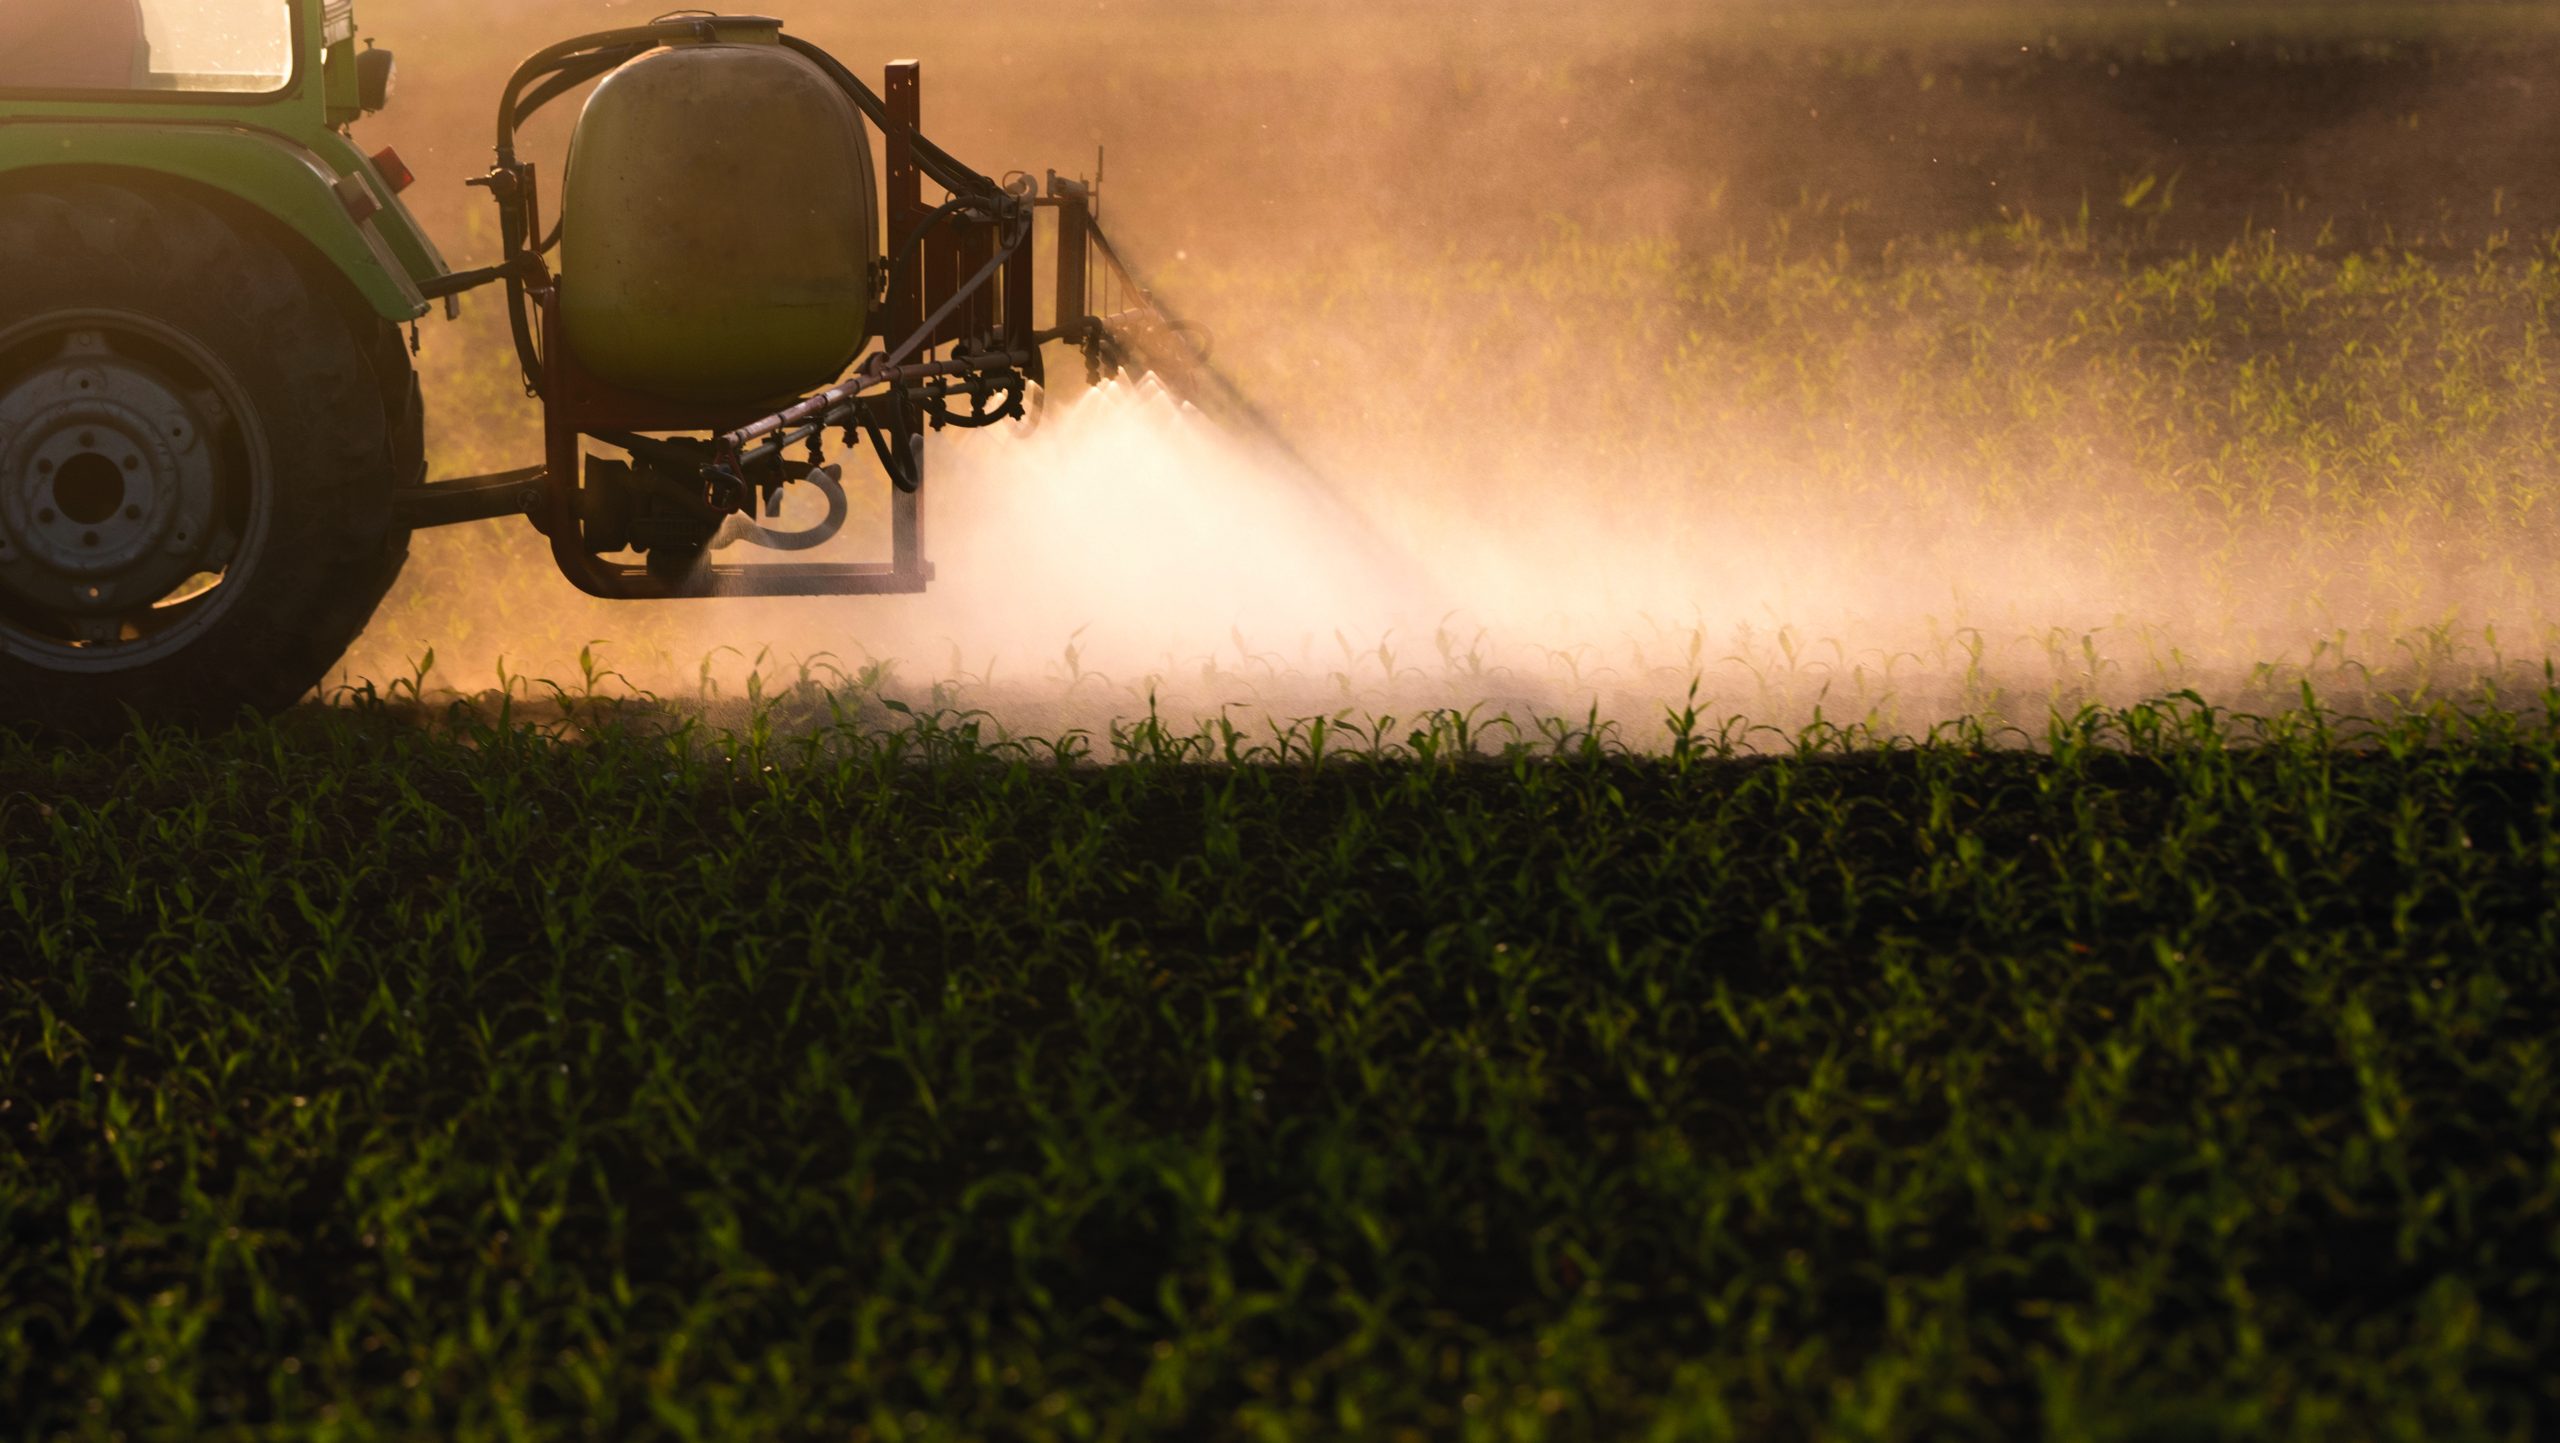 UE, linea dura sull'uso dei pesticidi